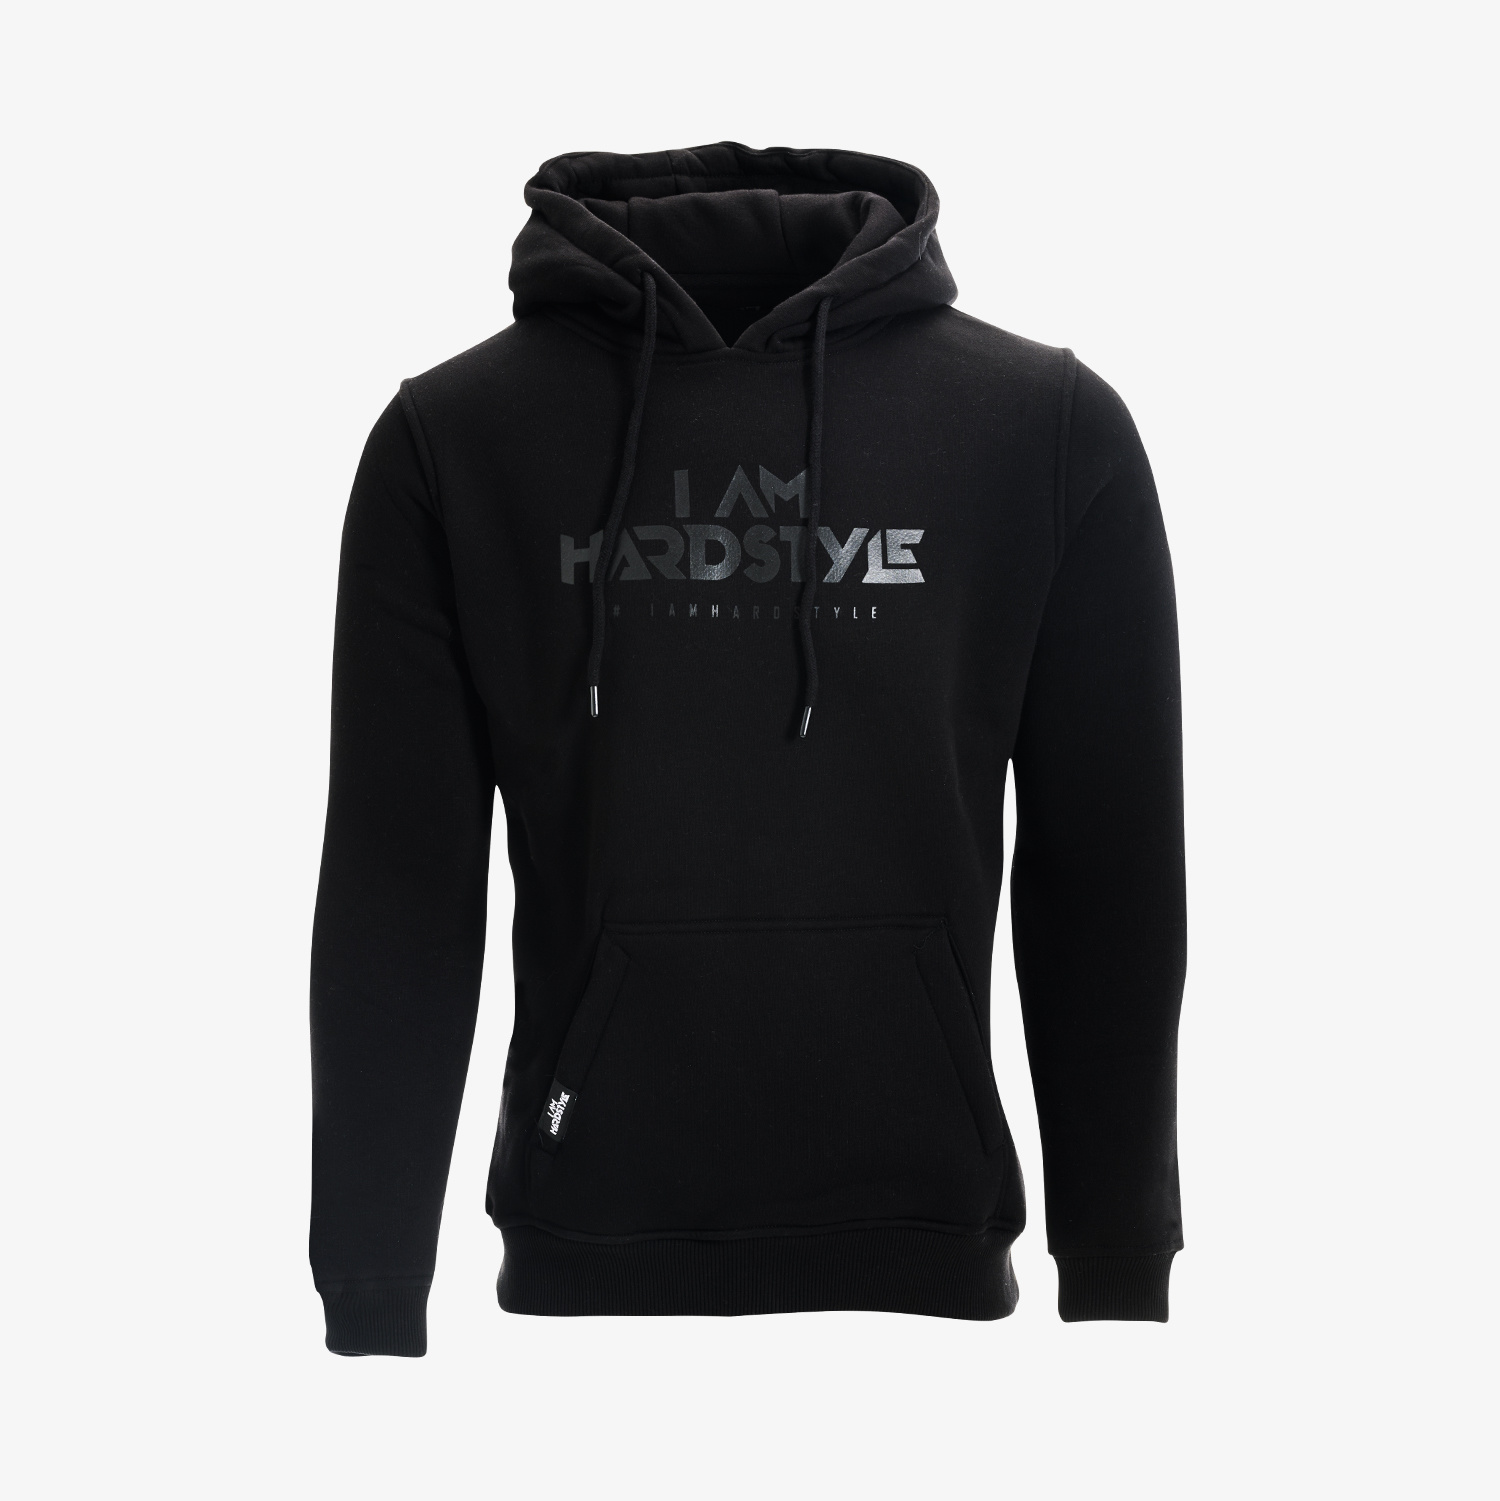 Hoodie (Black/Black) - Logo - I AM HARDSTYLE Shop